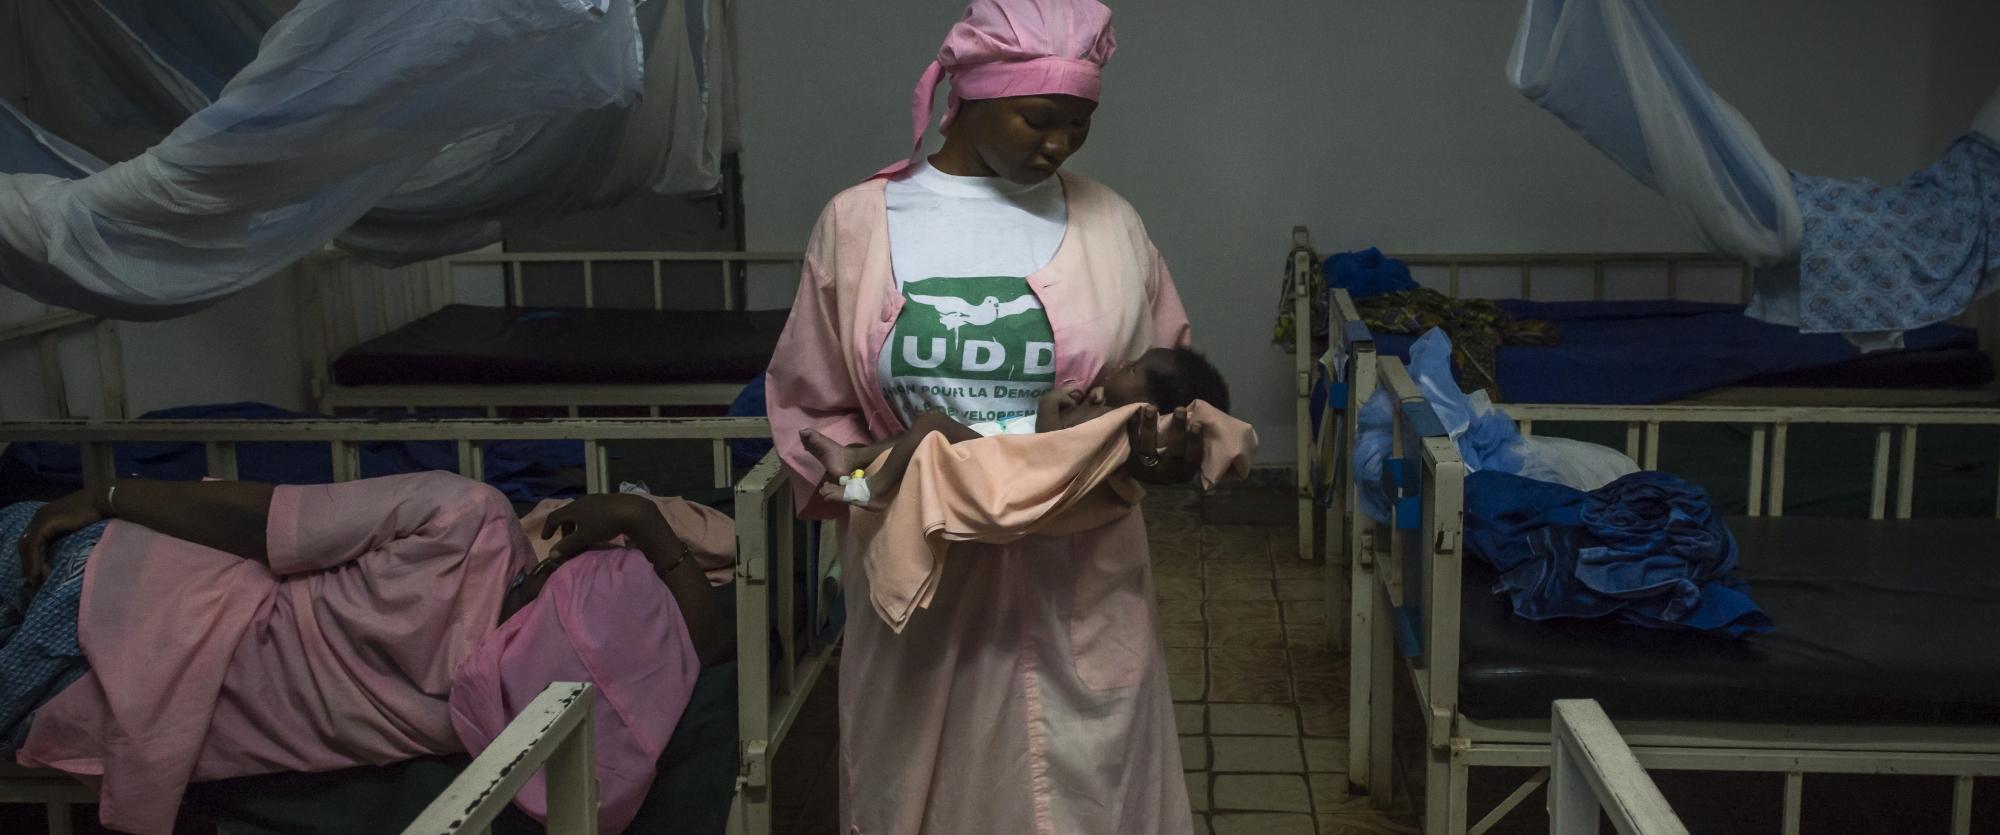 Médecins Sans Frontières ouvre en 2009 au Mali un projet pédiatrique intégré en collaboration avec le ministère de la Santé dans le district Koutiala, dans le sud-est du Mali. 